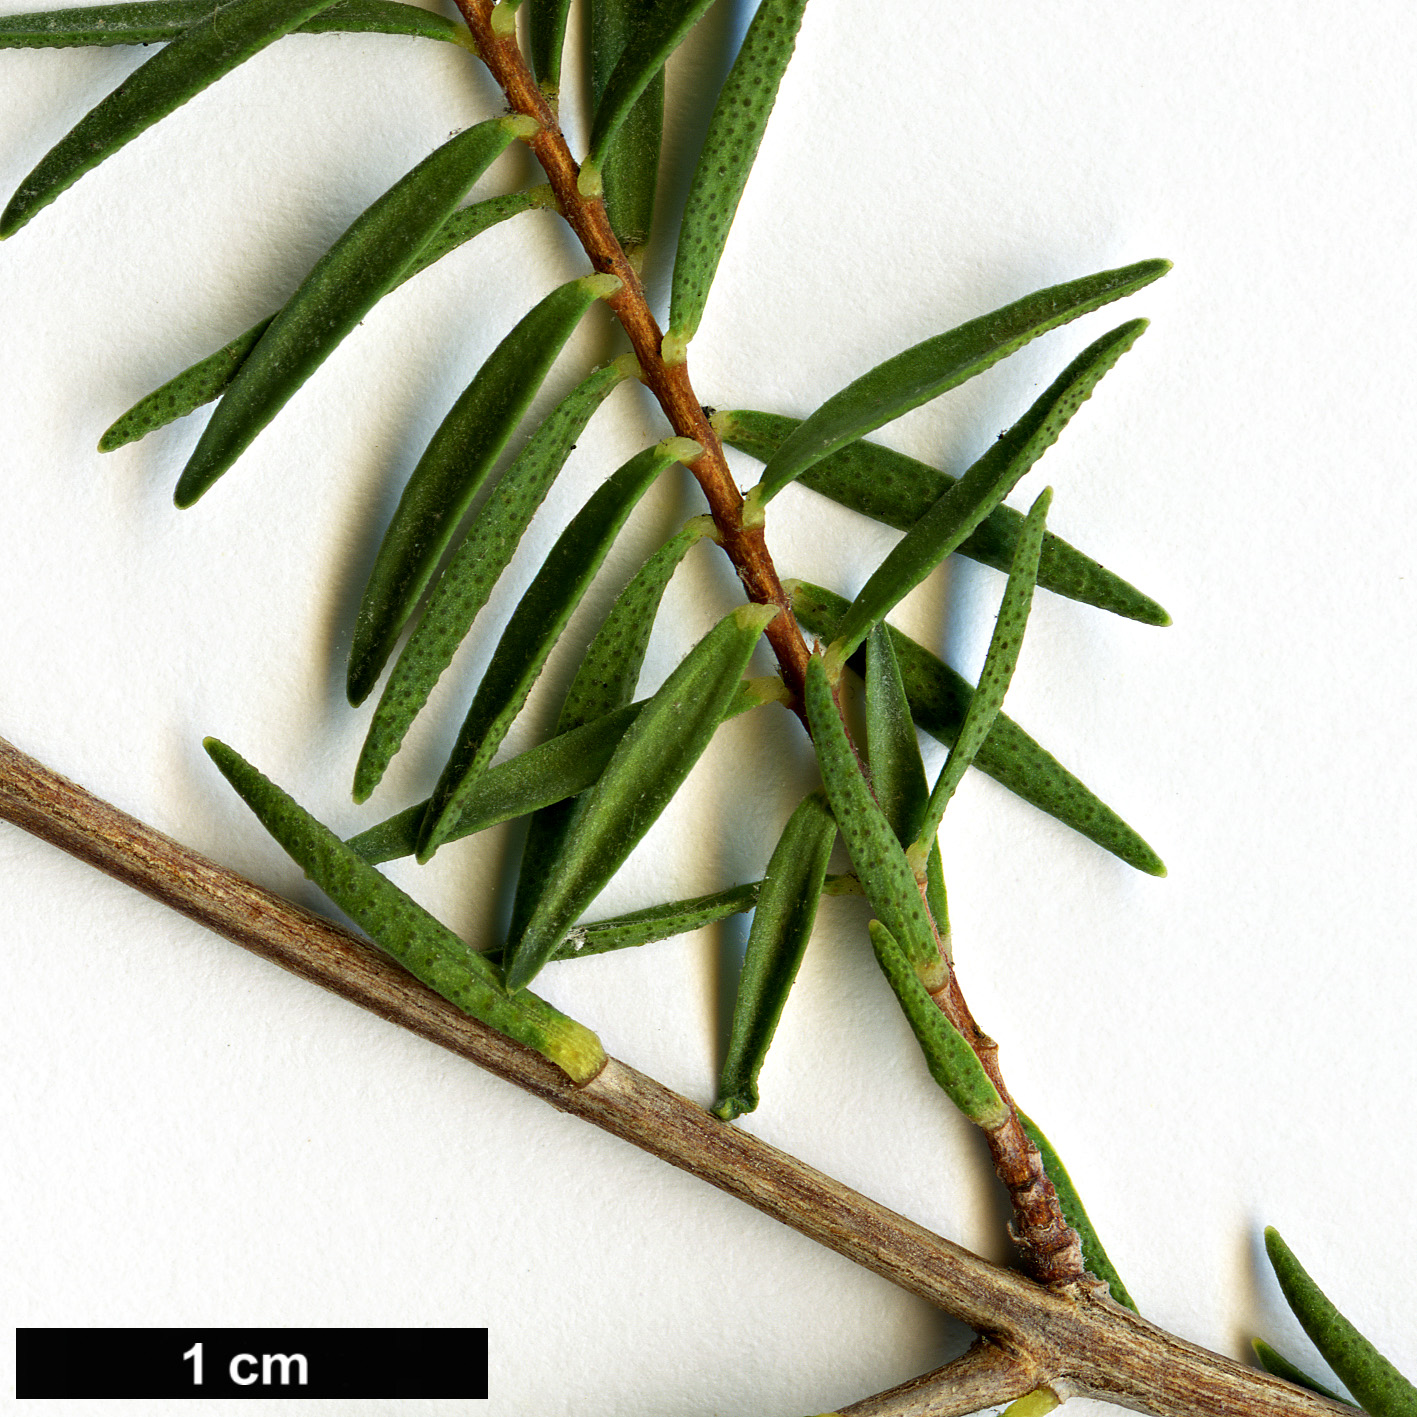 High resolution image: Family: Myrtaceae - Genus: Melaleuca - Taxon: decussata